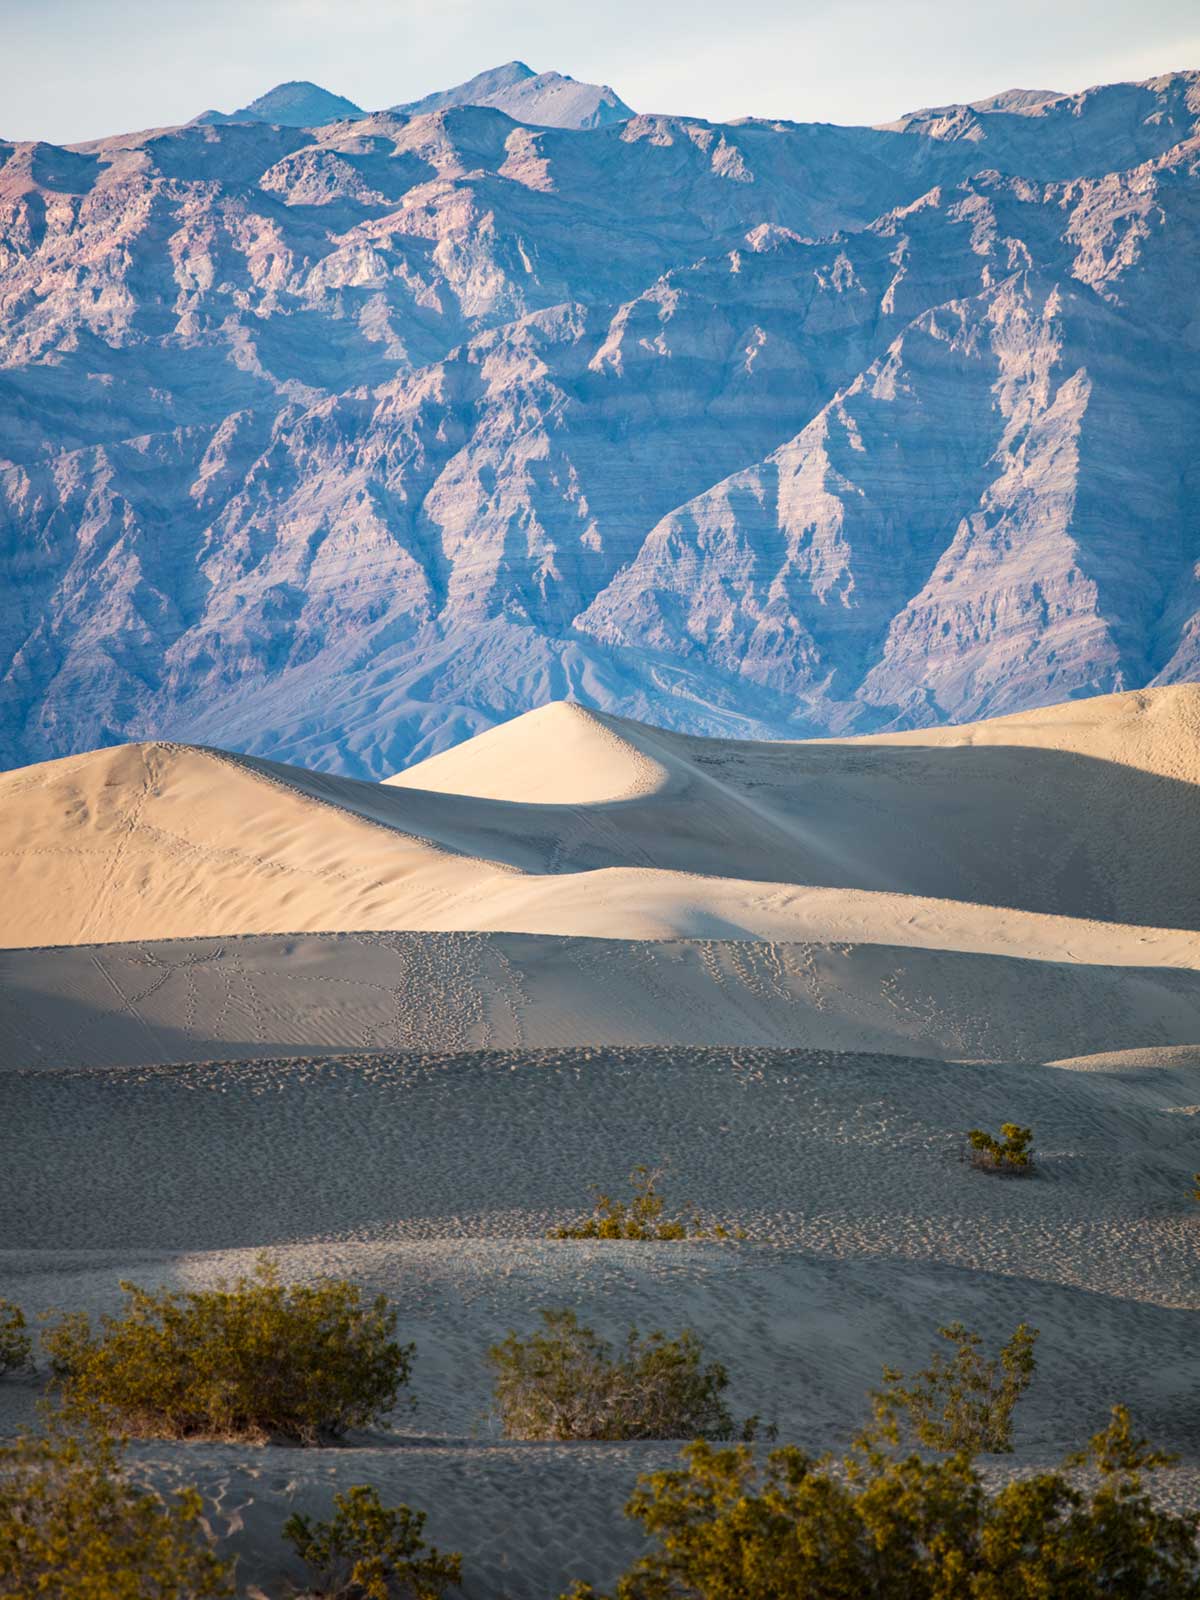 “Mesquite Sand Dunes” em f/5.6 1/160 ISO100 @ 300mm.